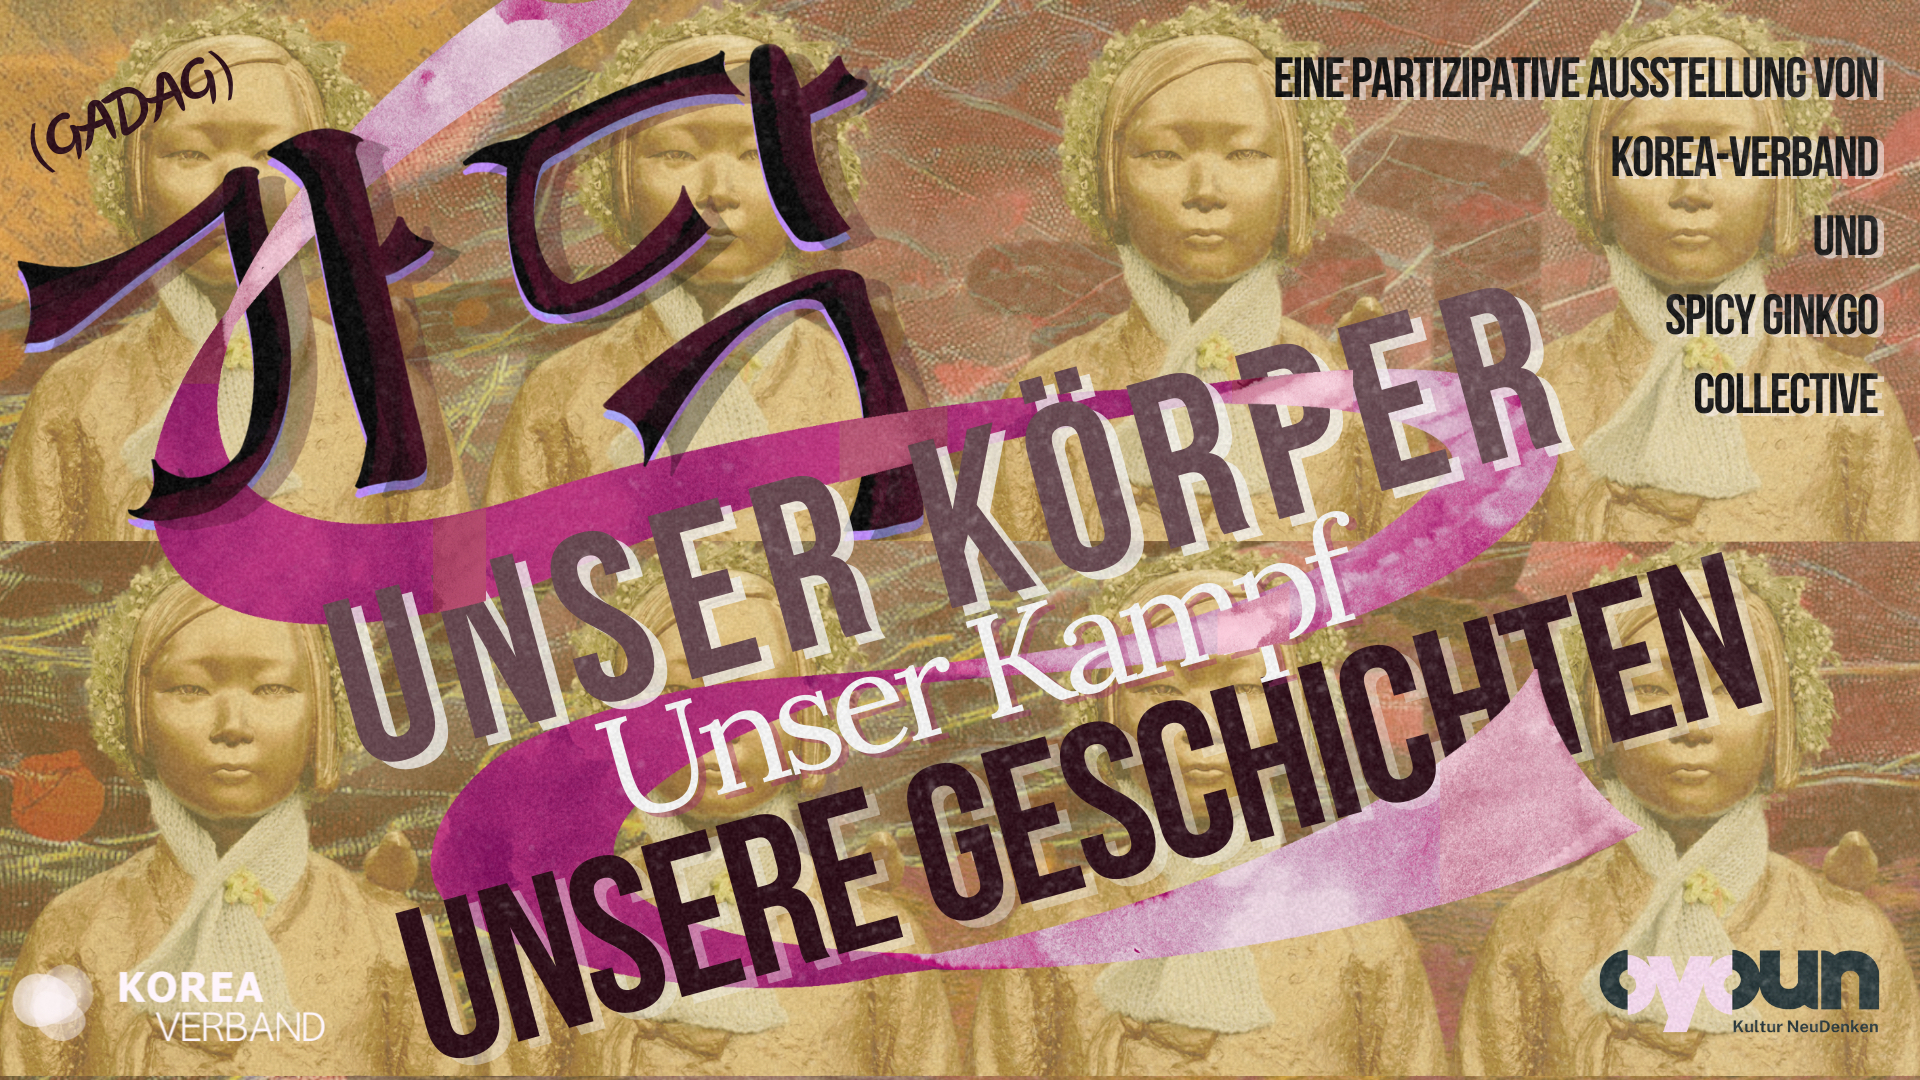 English: Exhibition poster with historical figures and text "Our Bodies, Our Stories." Deutsch: Ausstellungsposter mit historischen Figuren und dem Text "Unser Körper, Unsere Geschichten."